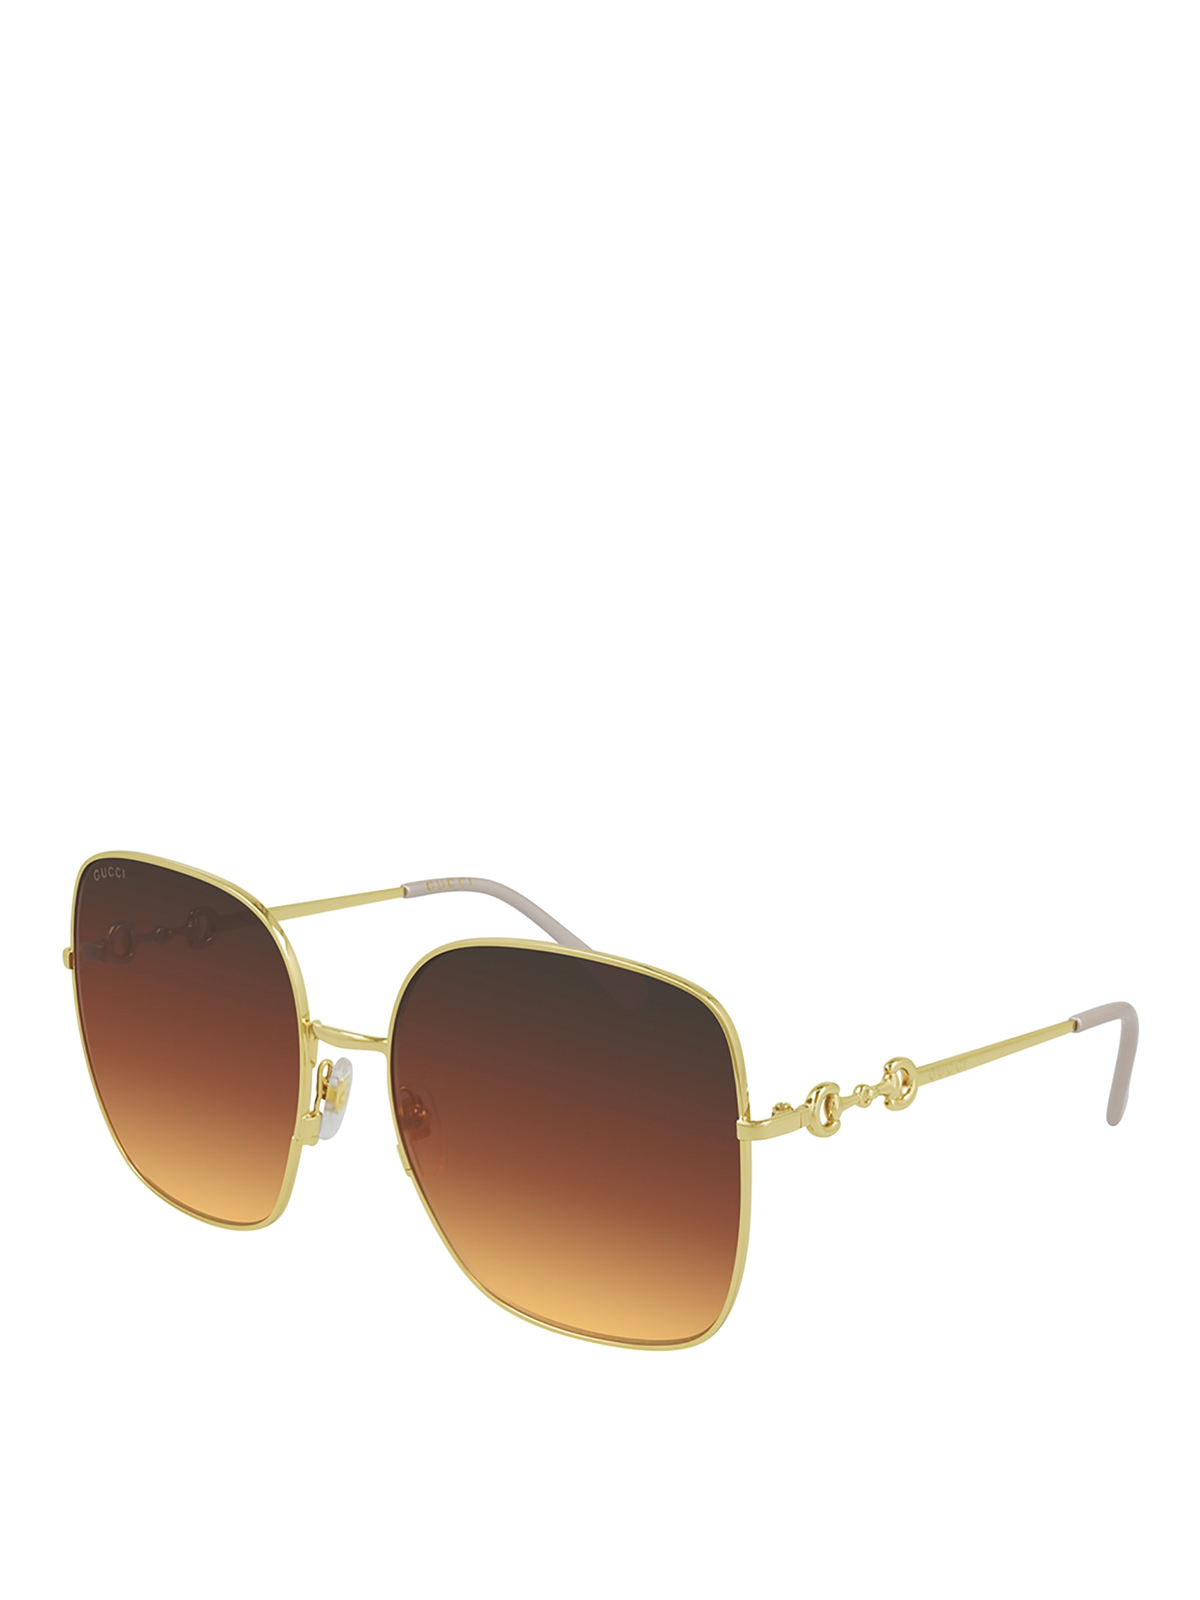 Gucci Squared Faded Sunglasses In Gold